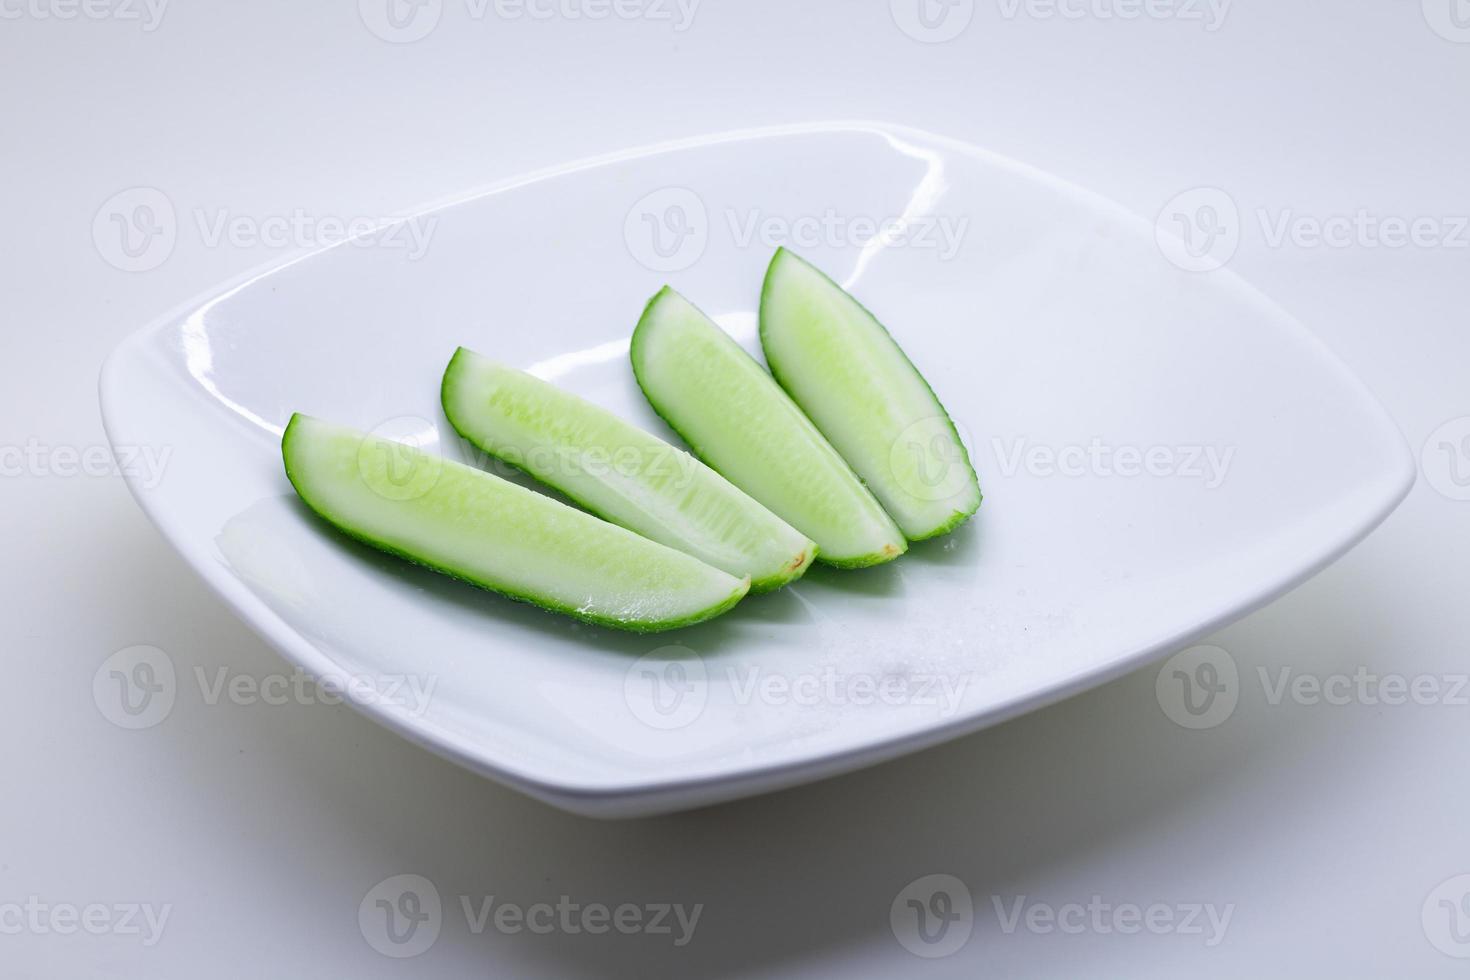 färska grönsaker på vit bakgrund foto